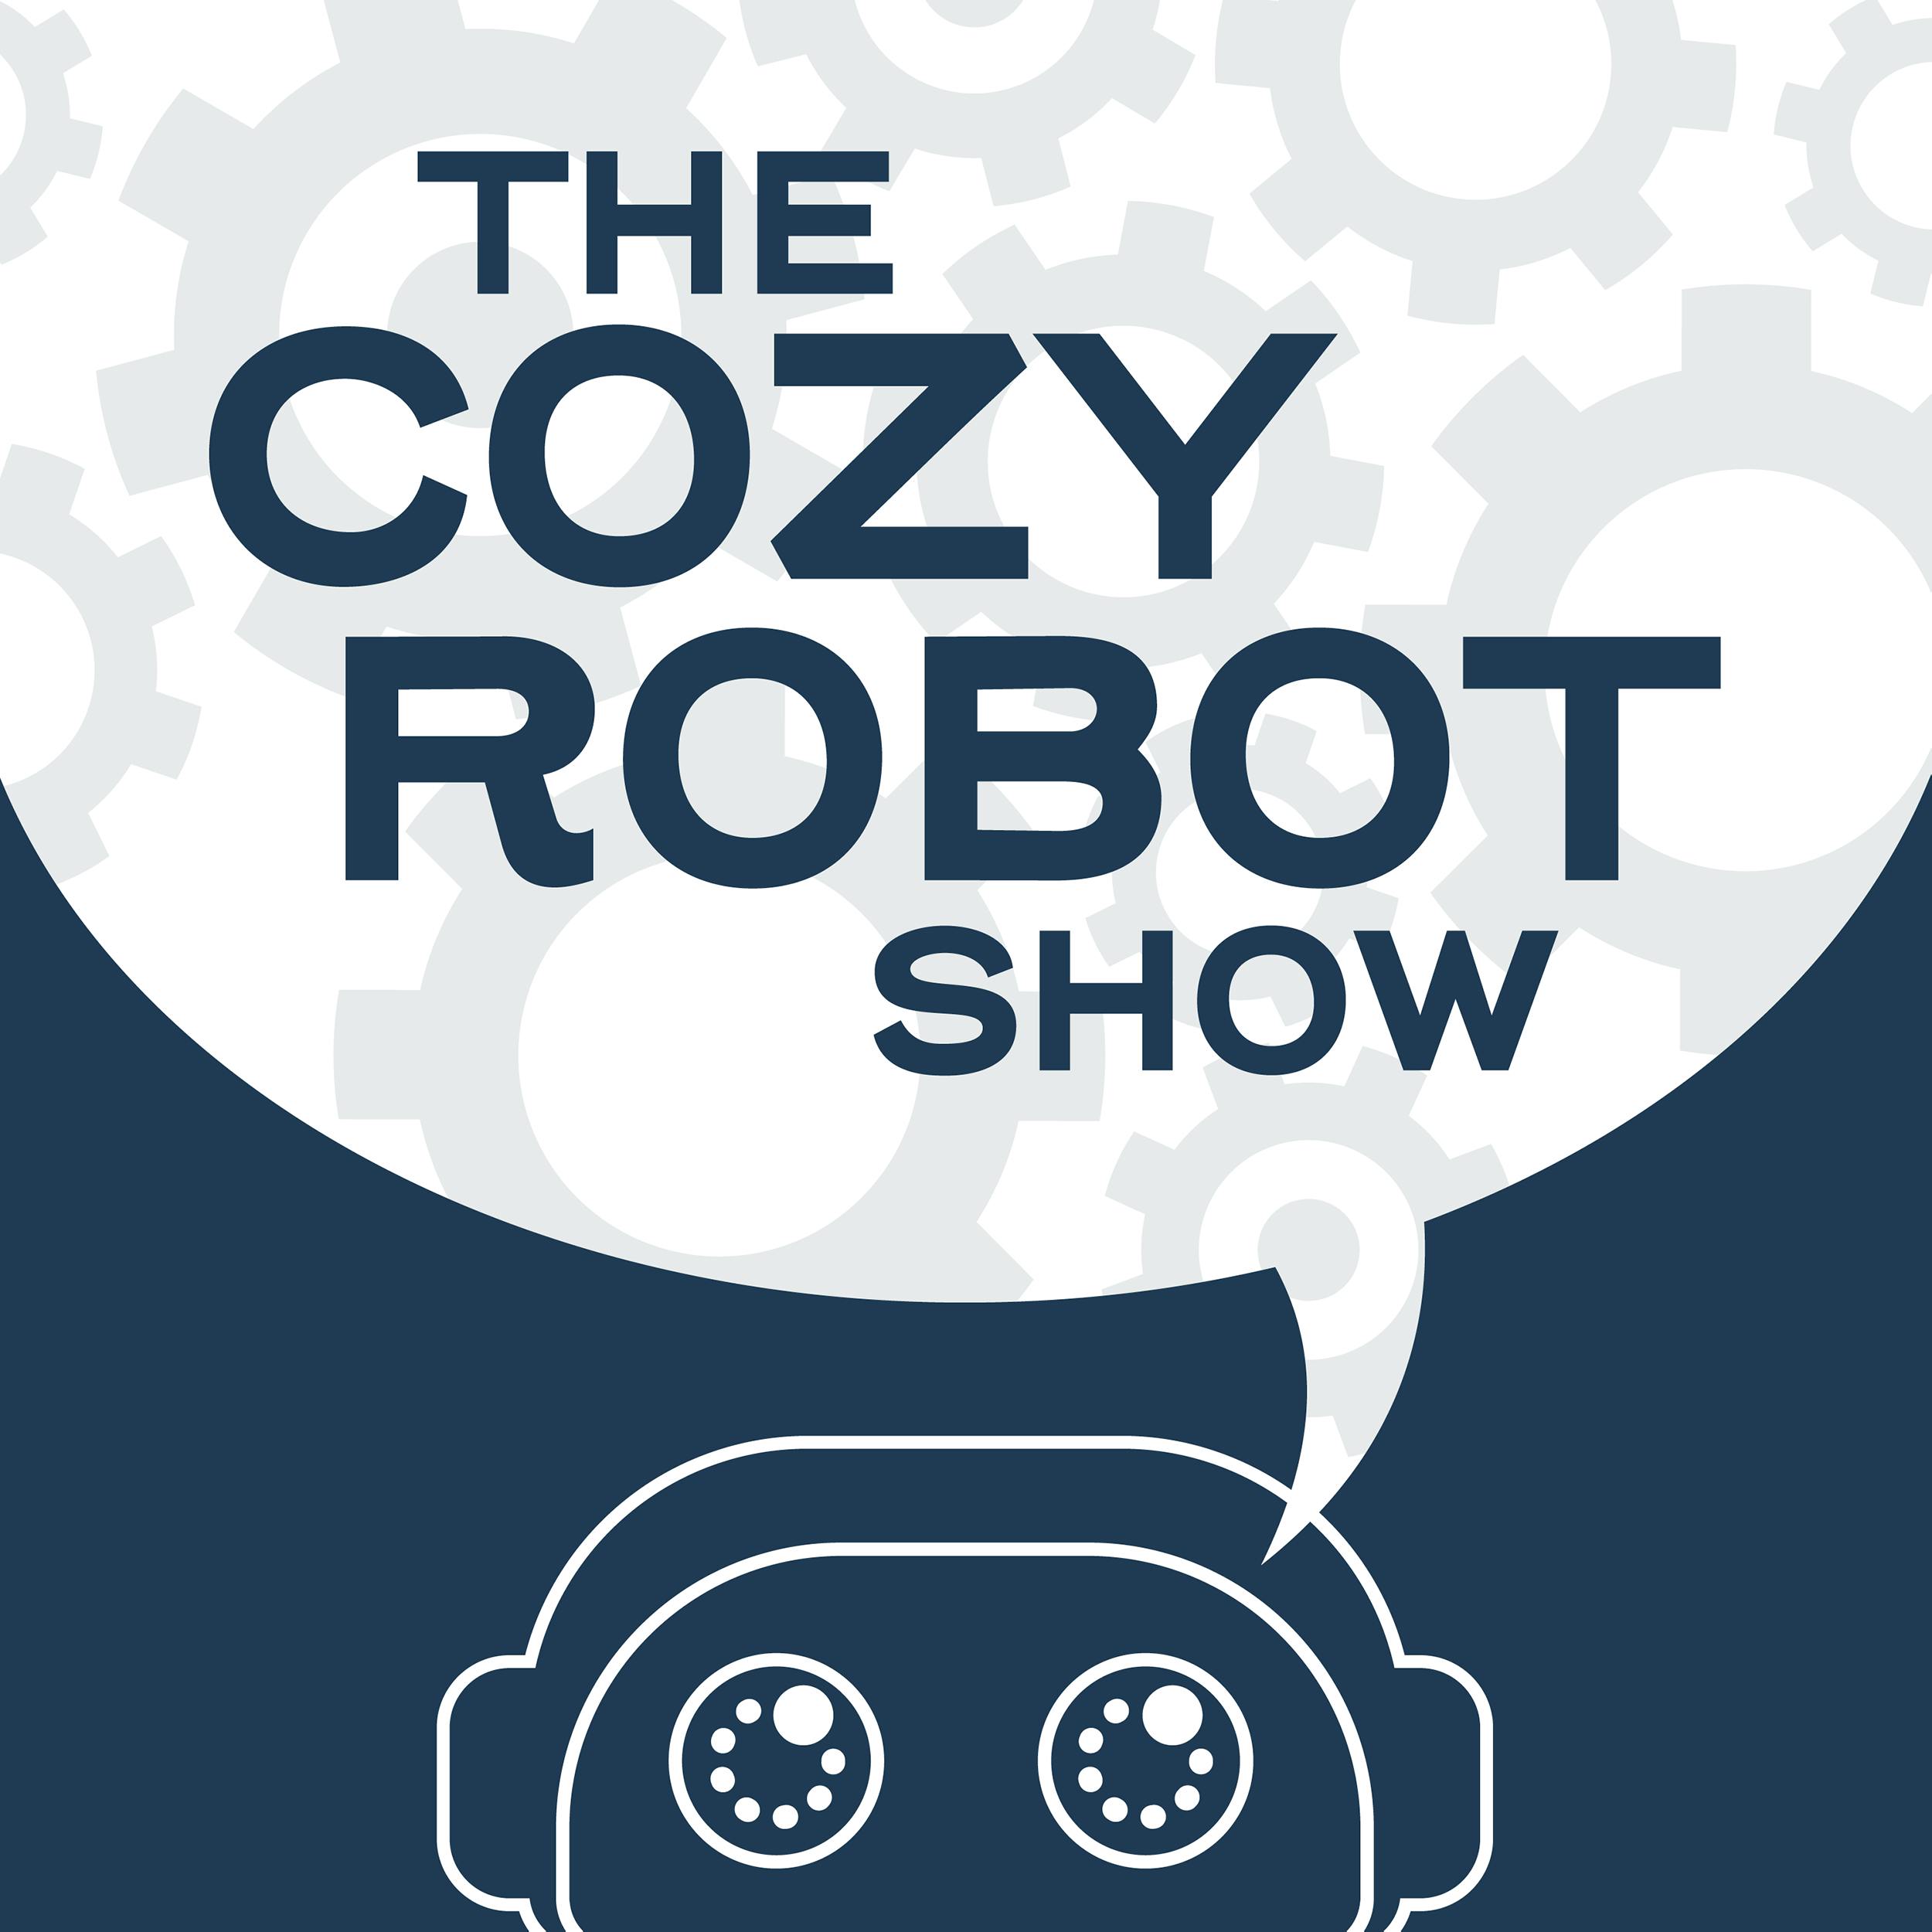 Cozy Robot Show: Let's Get LIT (erary)!